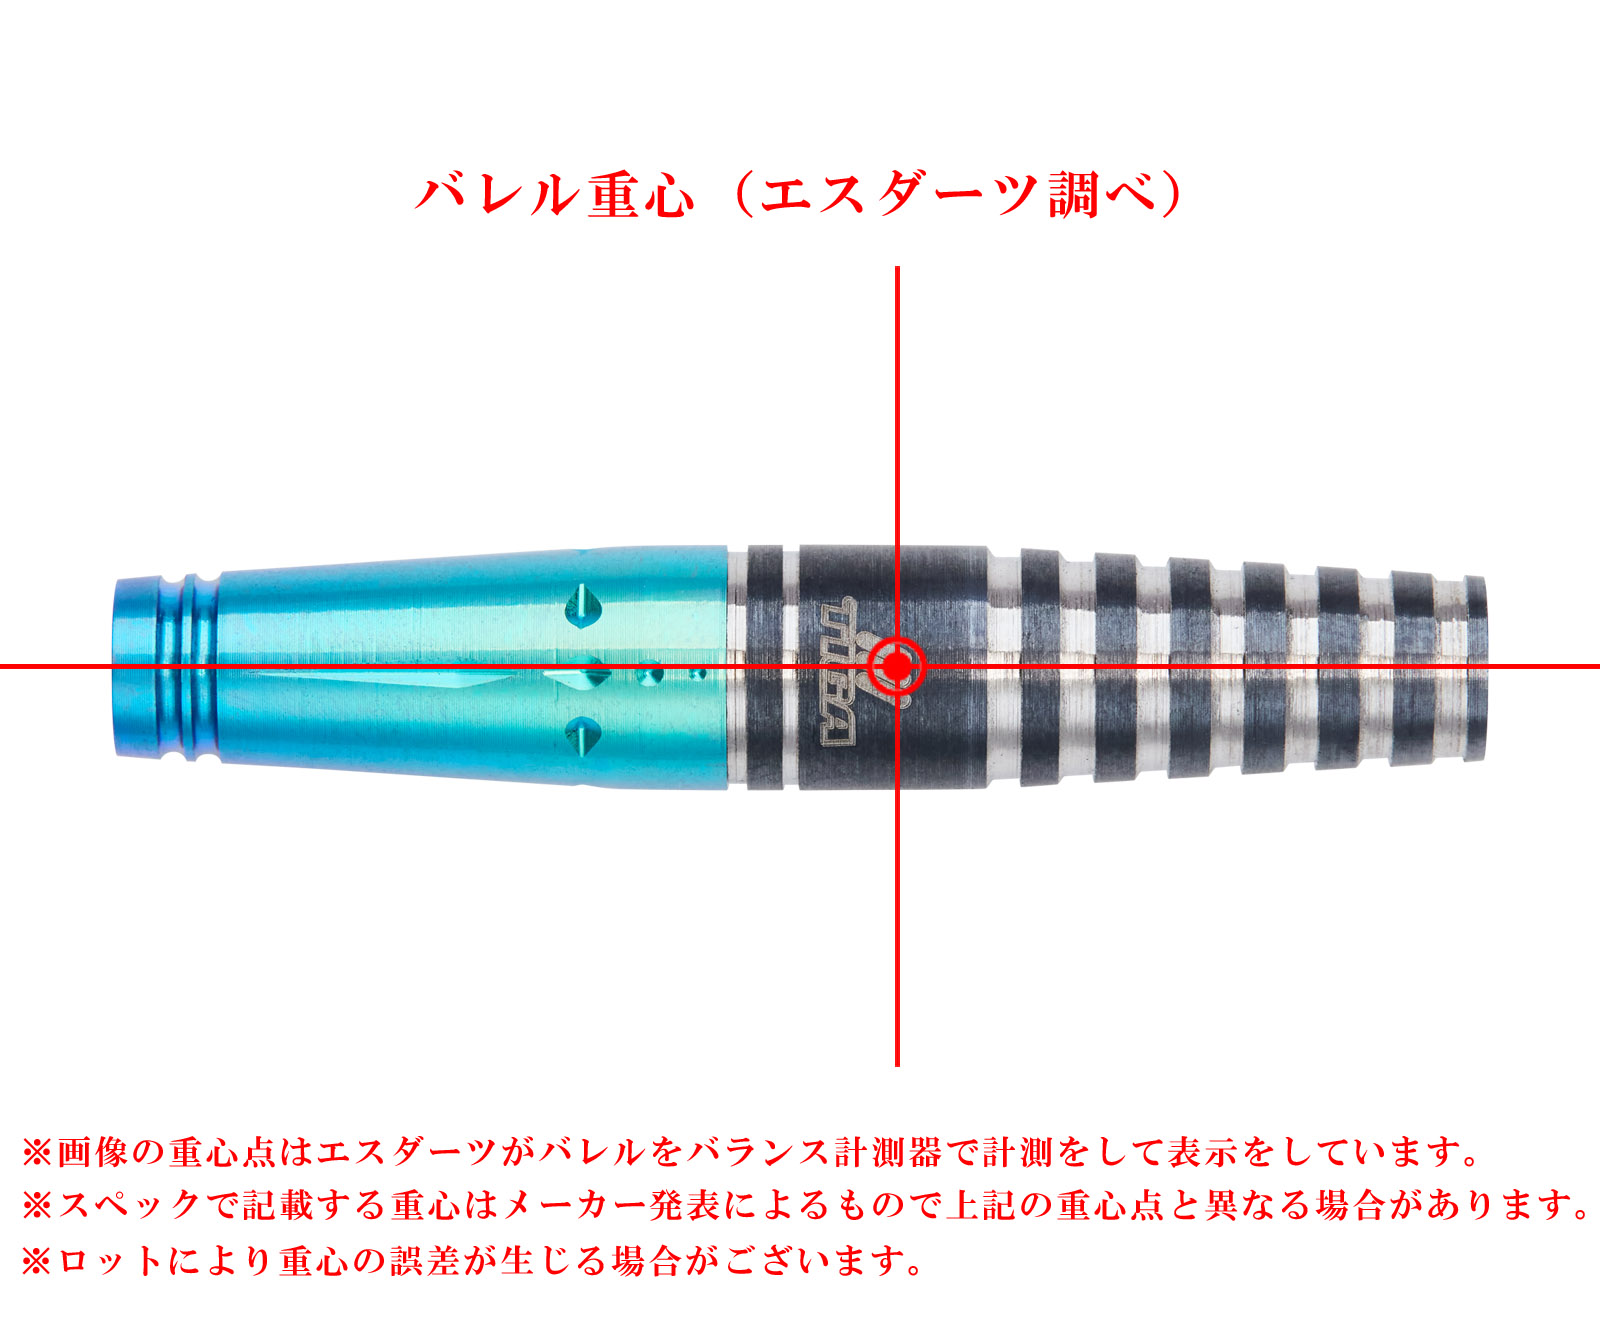 TIGA】EMPRECHU 2 Fusion Yukie Sakaguchi Model | Darts Online Shop 